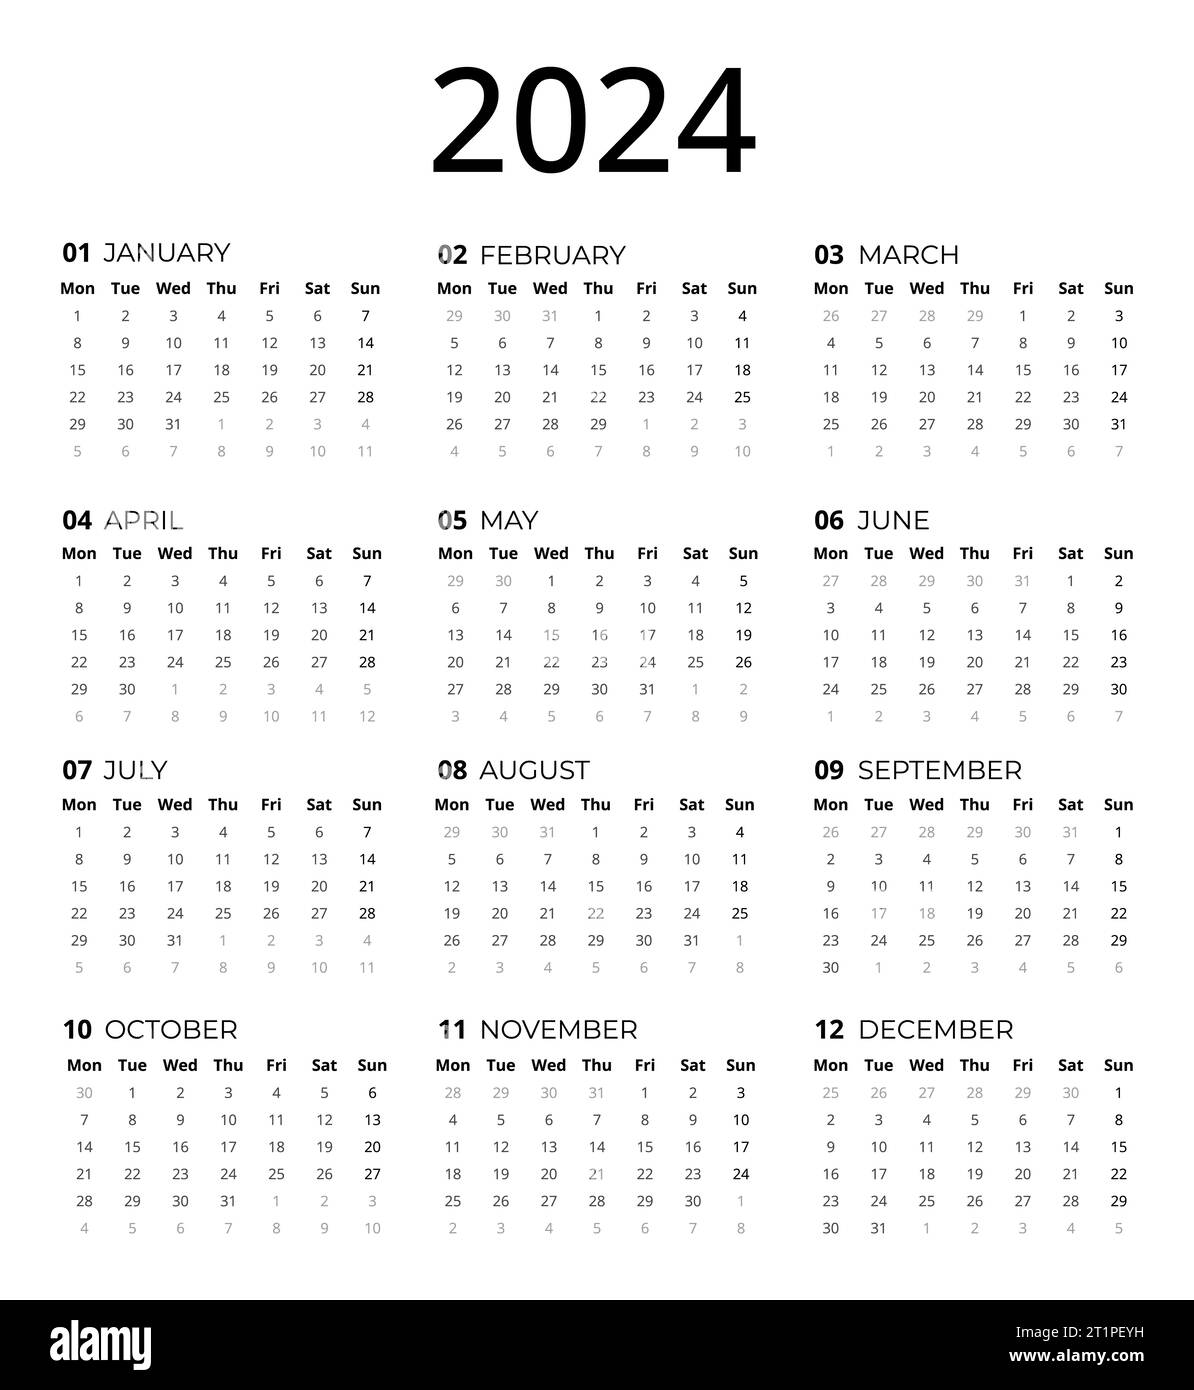 Calendar for 2024, 2024 Calendar template that you can use to make your calendar designs easily. Simple Calendar 2024 design Stock Photo